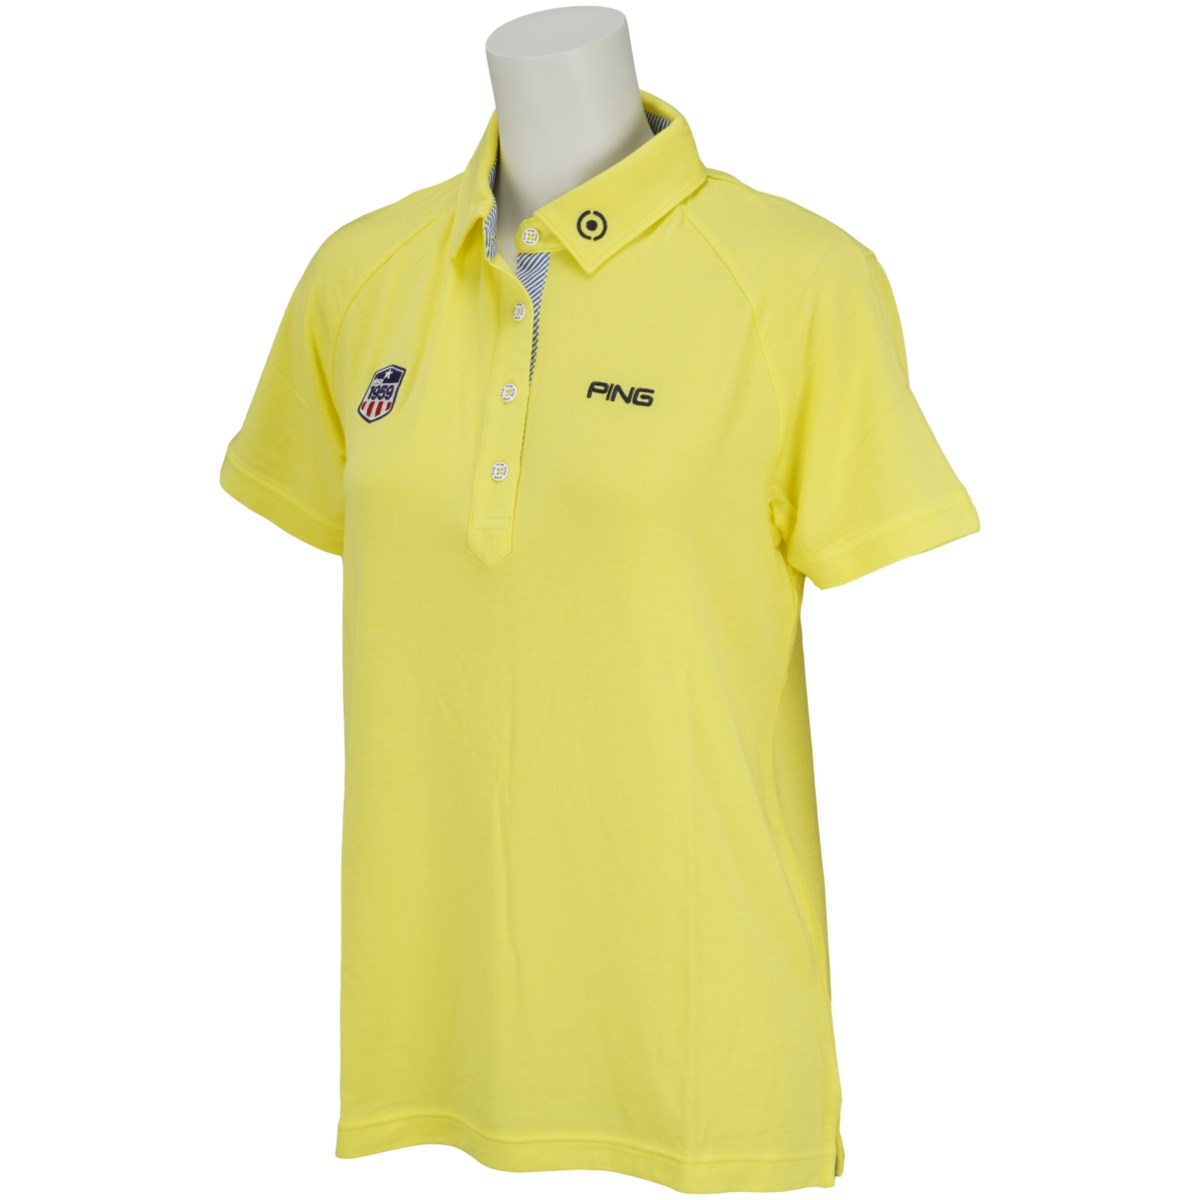 [アウトレット] [在庫限りのお買い得商品] ピン PING 共襟半袖ポロシャツ イエロー 060 レディース ゴルフウェア